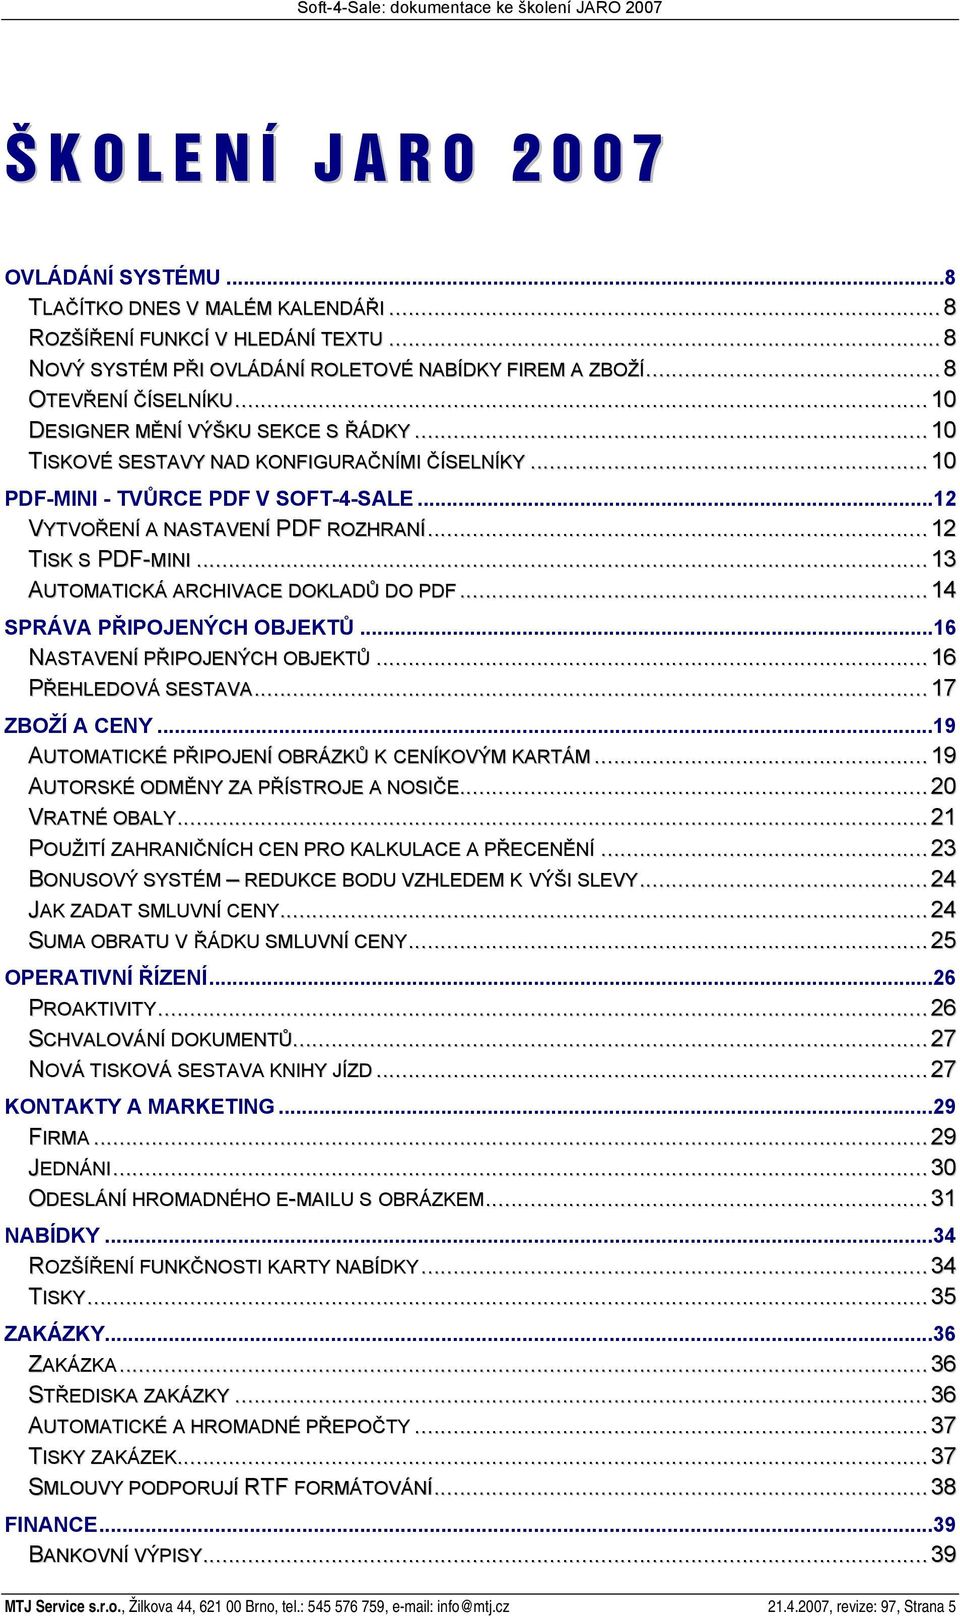 ..12 TISK S PDF-MINI...13 AUTOMATICKÁ ARCHIVACE DOKLADŮ DO PDF...14 SPRÁVA PŘIPOJENÝCH OBJEKTŮ...16 NASTAVENÍ PŘIPOJENÝCH OBJEKTŮ...16 PŘEHLEDOVÁ SESTAVA...17 ZBOŽÍ A CENY.